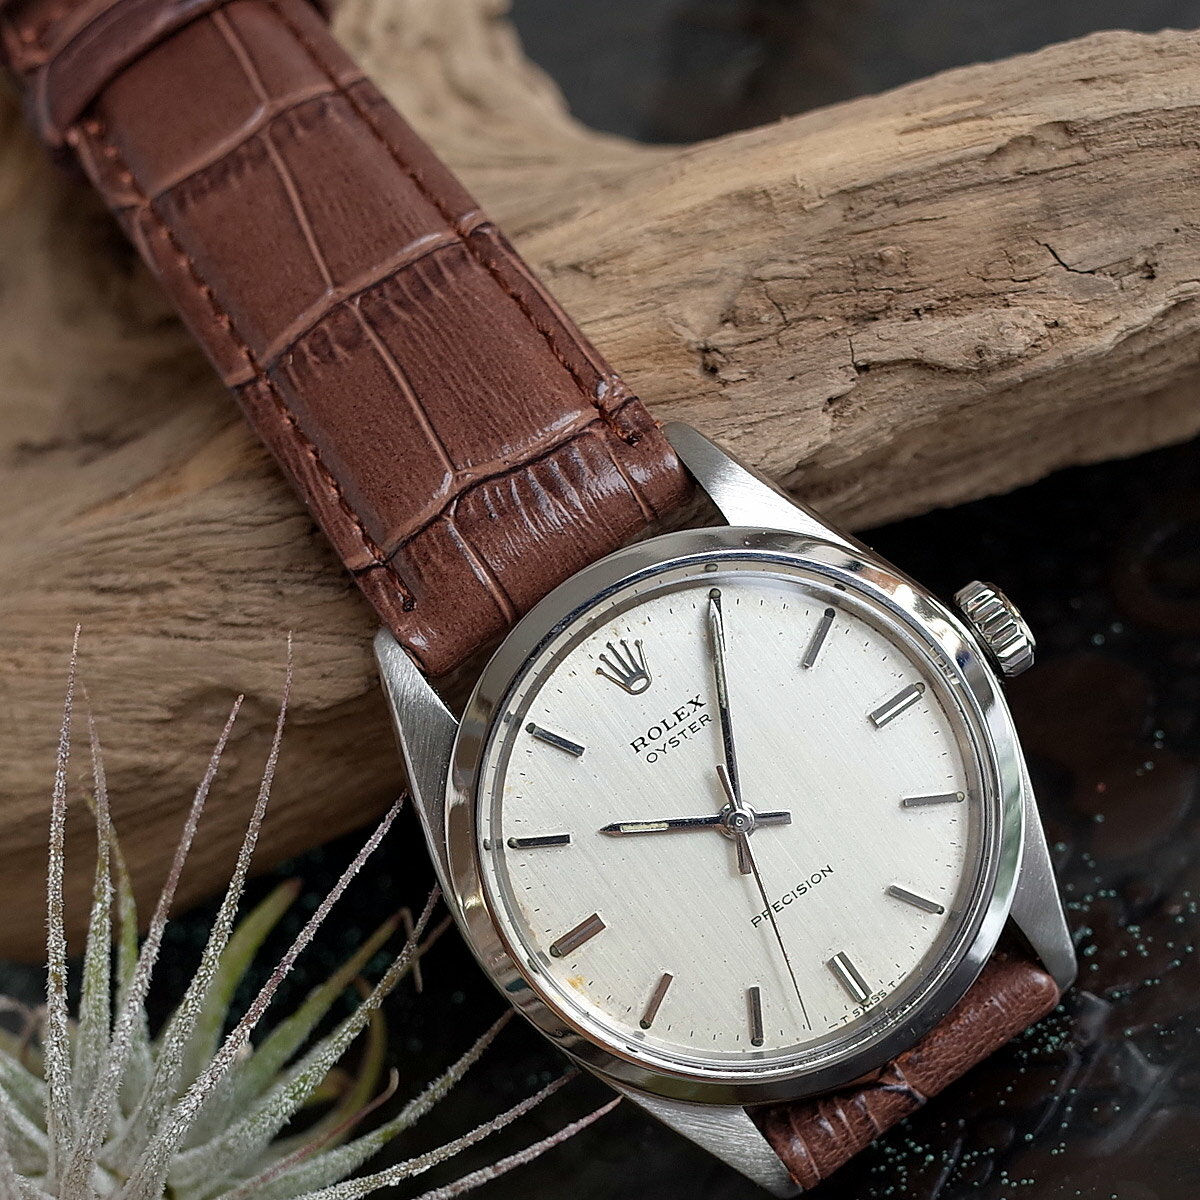 価格帯[20万円台] ロレックス(ROLEX)の腕時計 販売情報一覧 - 腕時計 ...